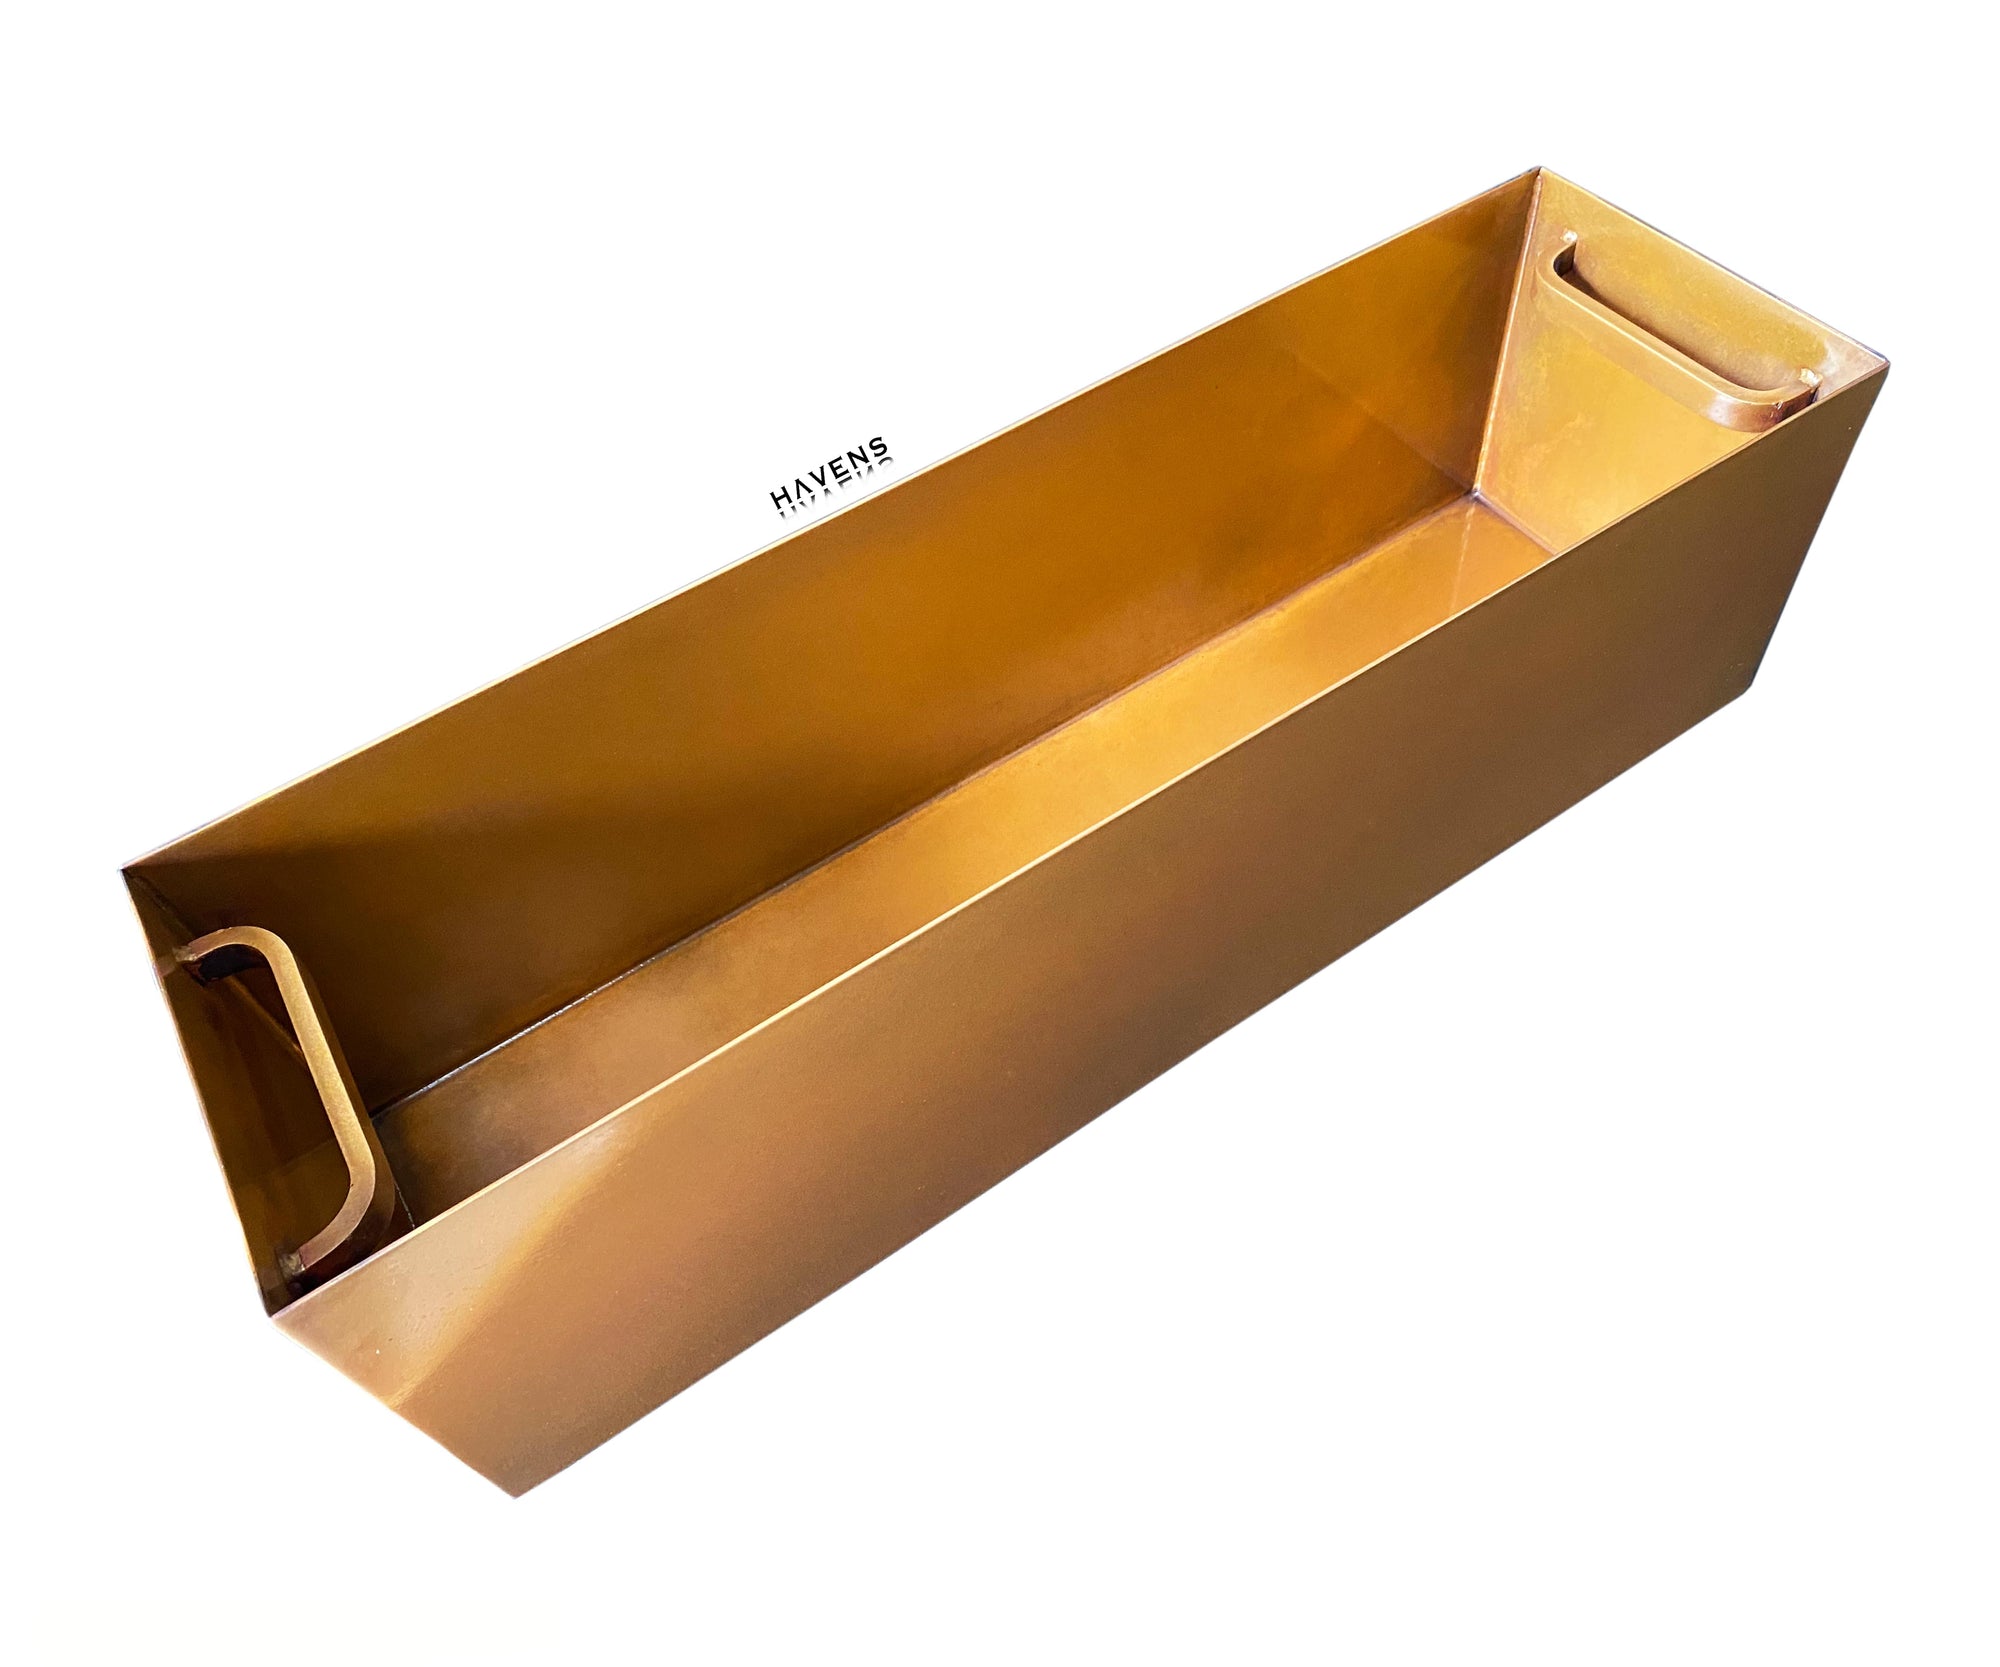 Custom Trough Sink - Pure Copper